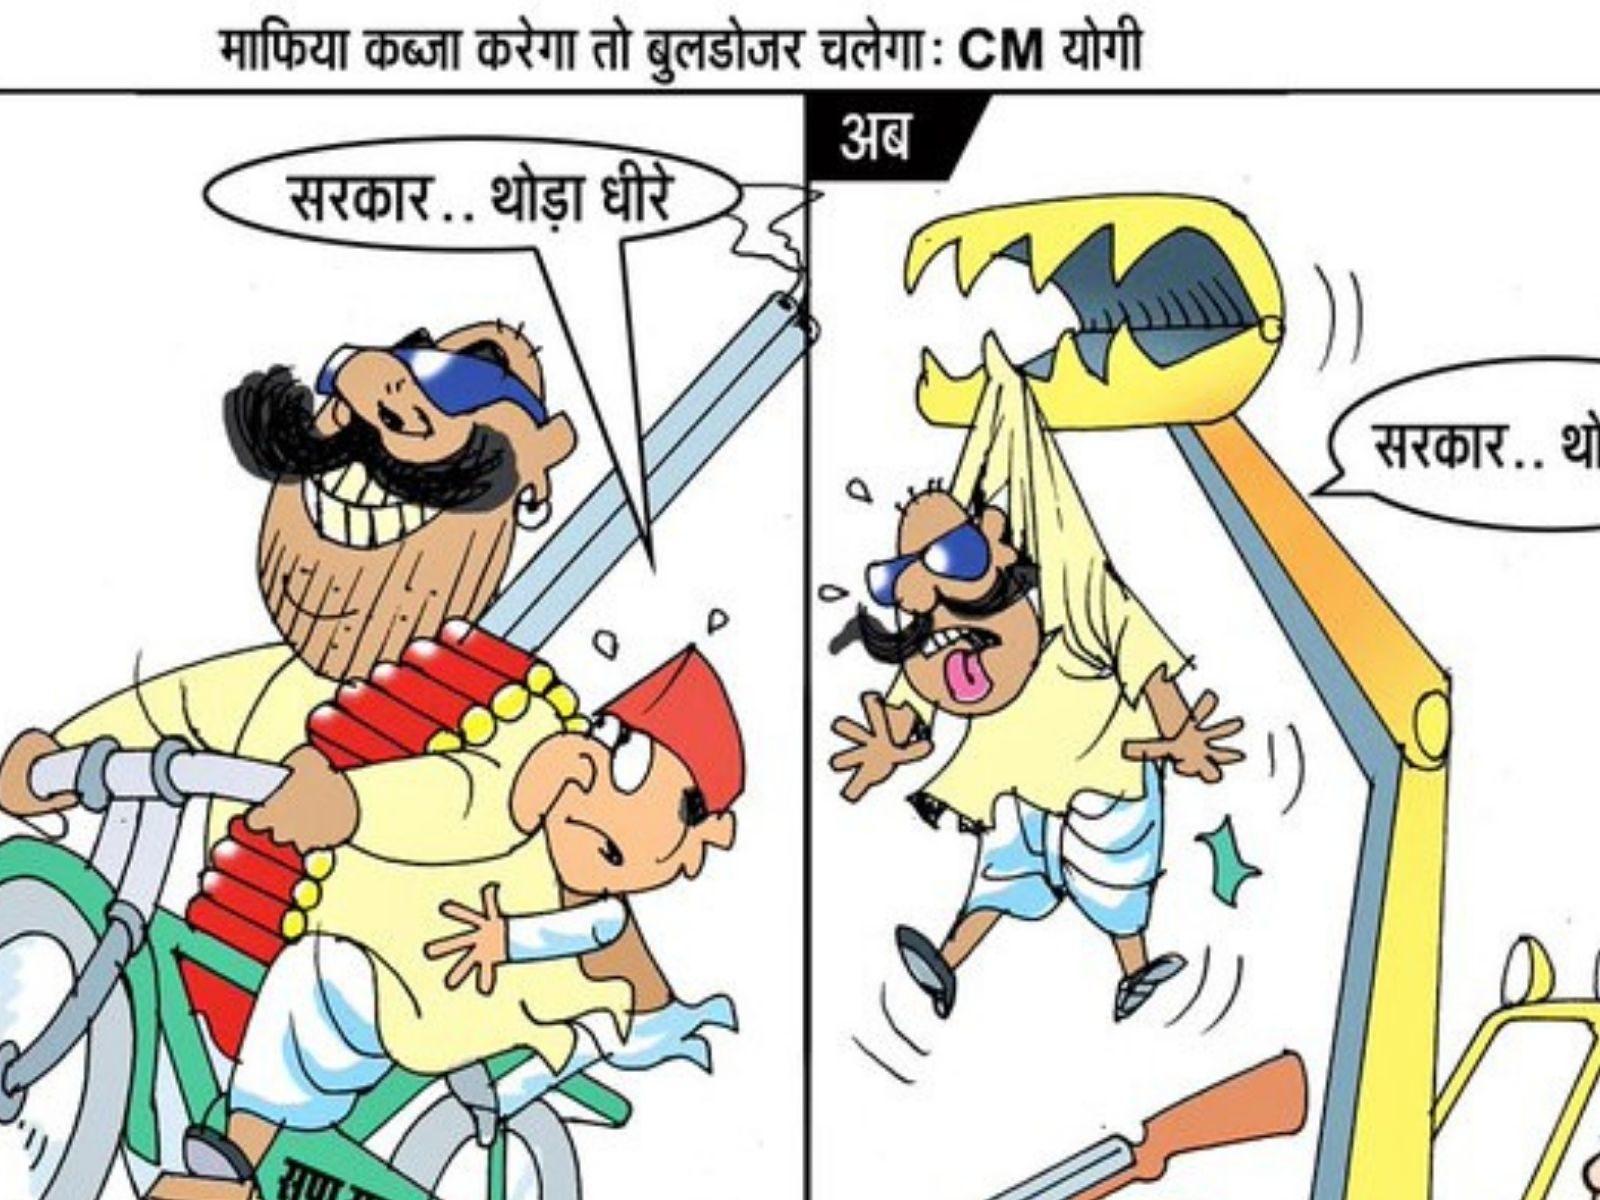 यूपी विधानसभा चुनाव 2022: BJP UP का नया पोस्टर, लिखा- 'माफिया कब्जा करेगा  तो बुलडोजर चलेगा' - up bjp attack samajwadi party over bulldoze cartoon  before up election 2022 upns – News18 हिंदी